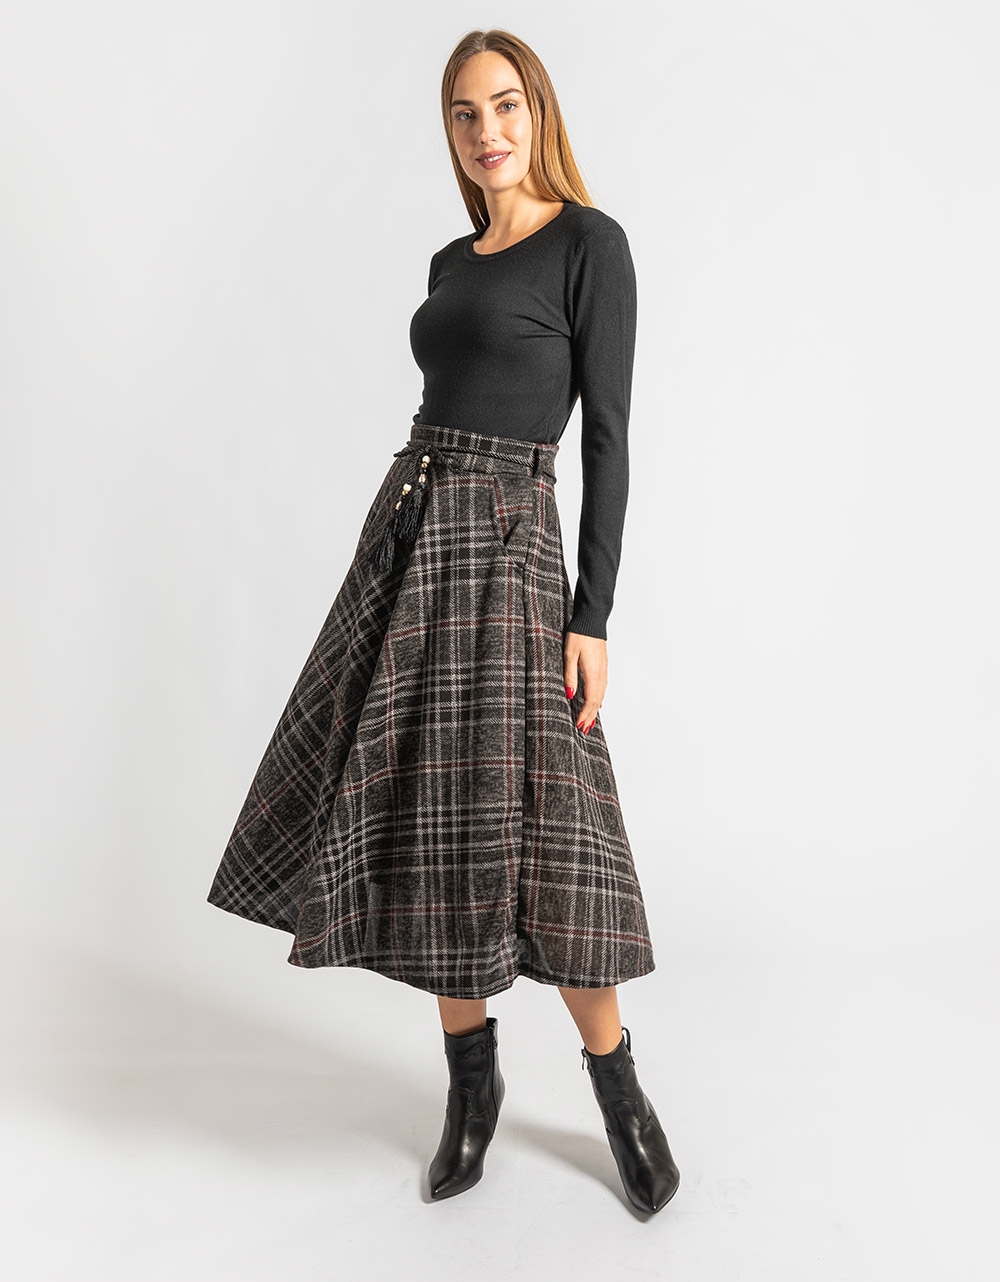 Εικόνα από Καρό φούστα σε Α γραμμή με τσέπες στο πλάι Γκρι/Μαύρο